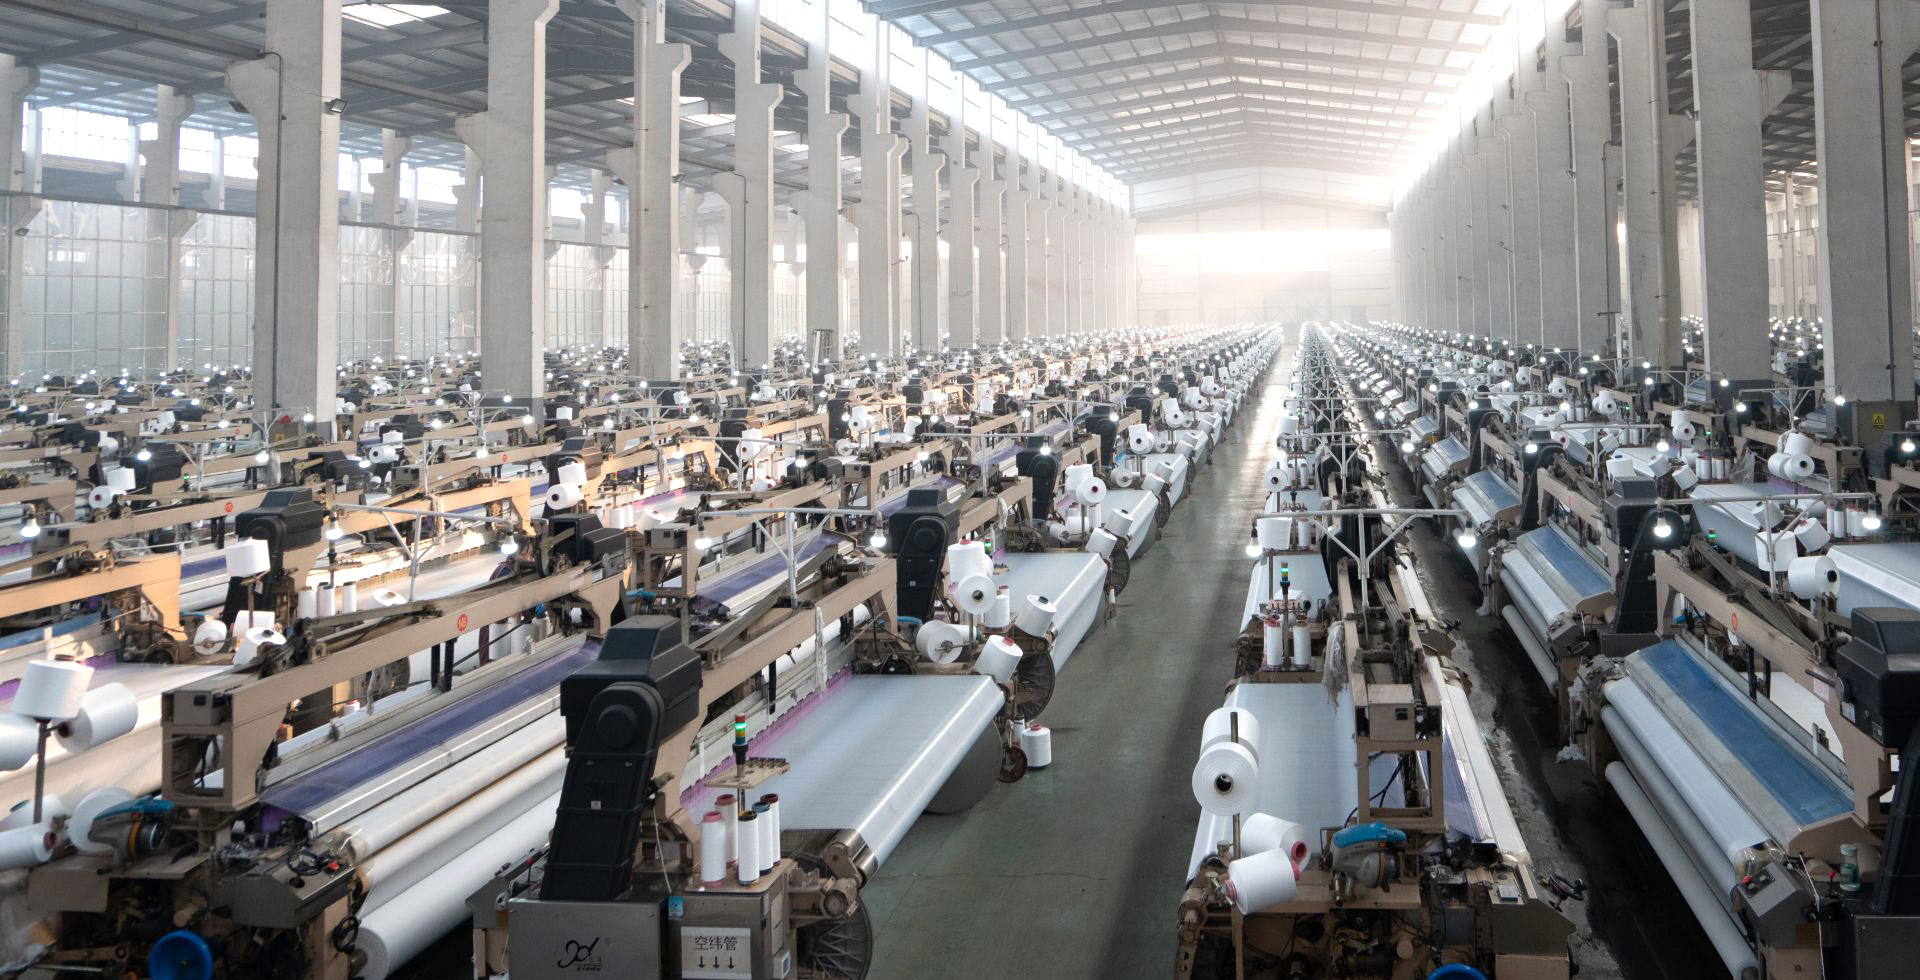 集紡絲、加彈、織布、印花加工、國內外銷售一體化的企業